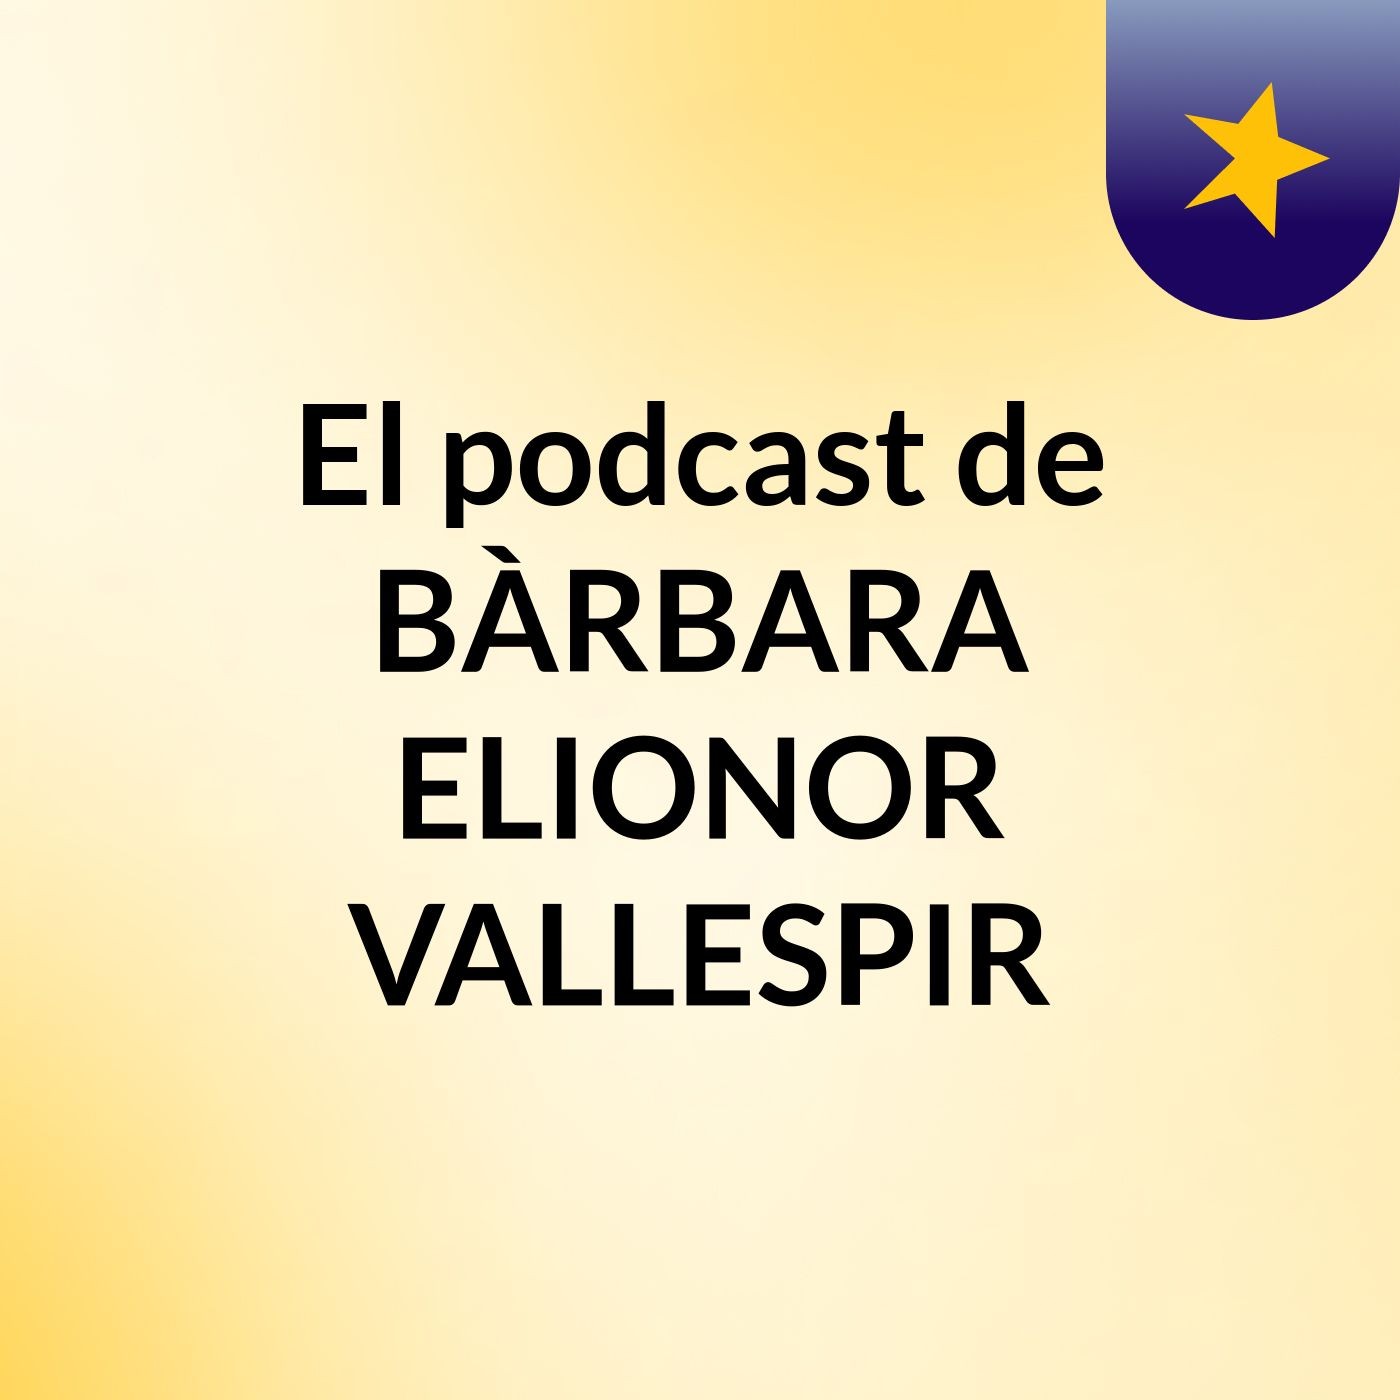 Episodio 5 - El podcast de Auba Trias